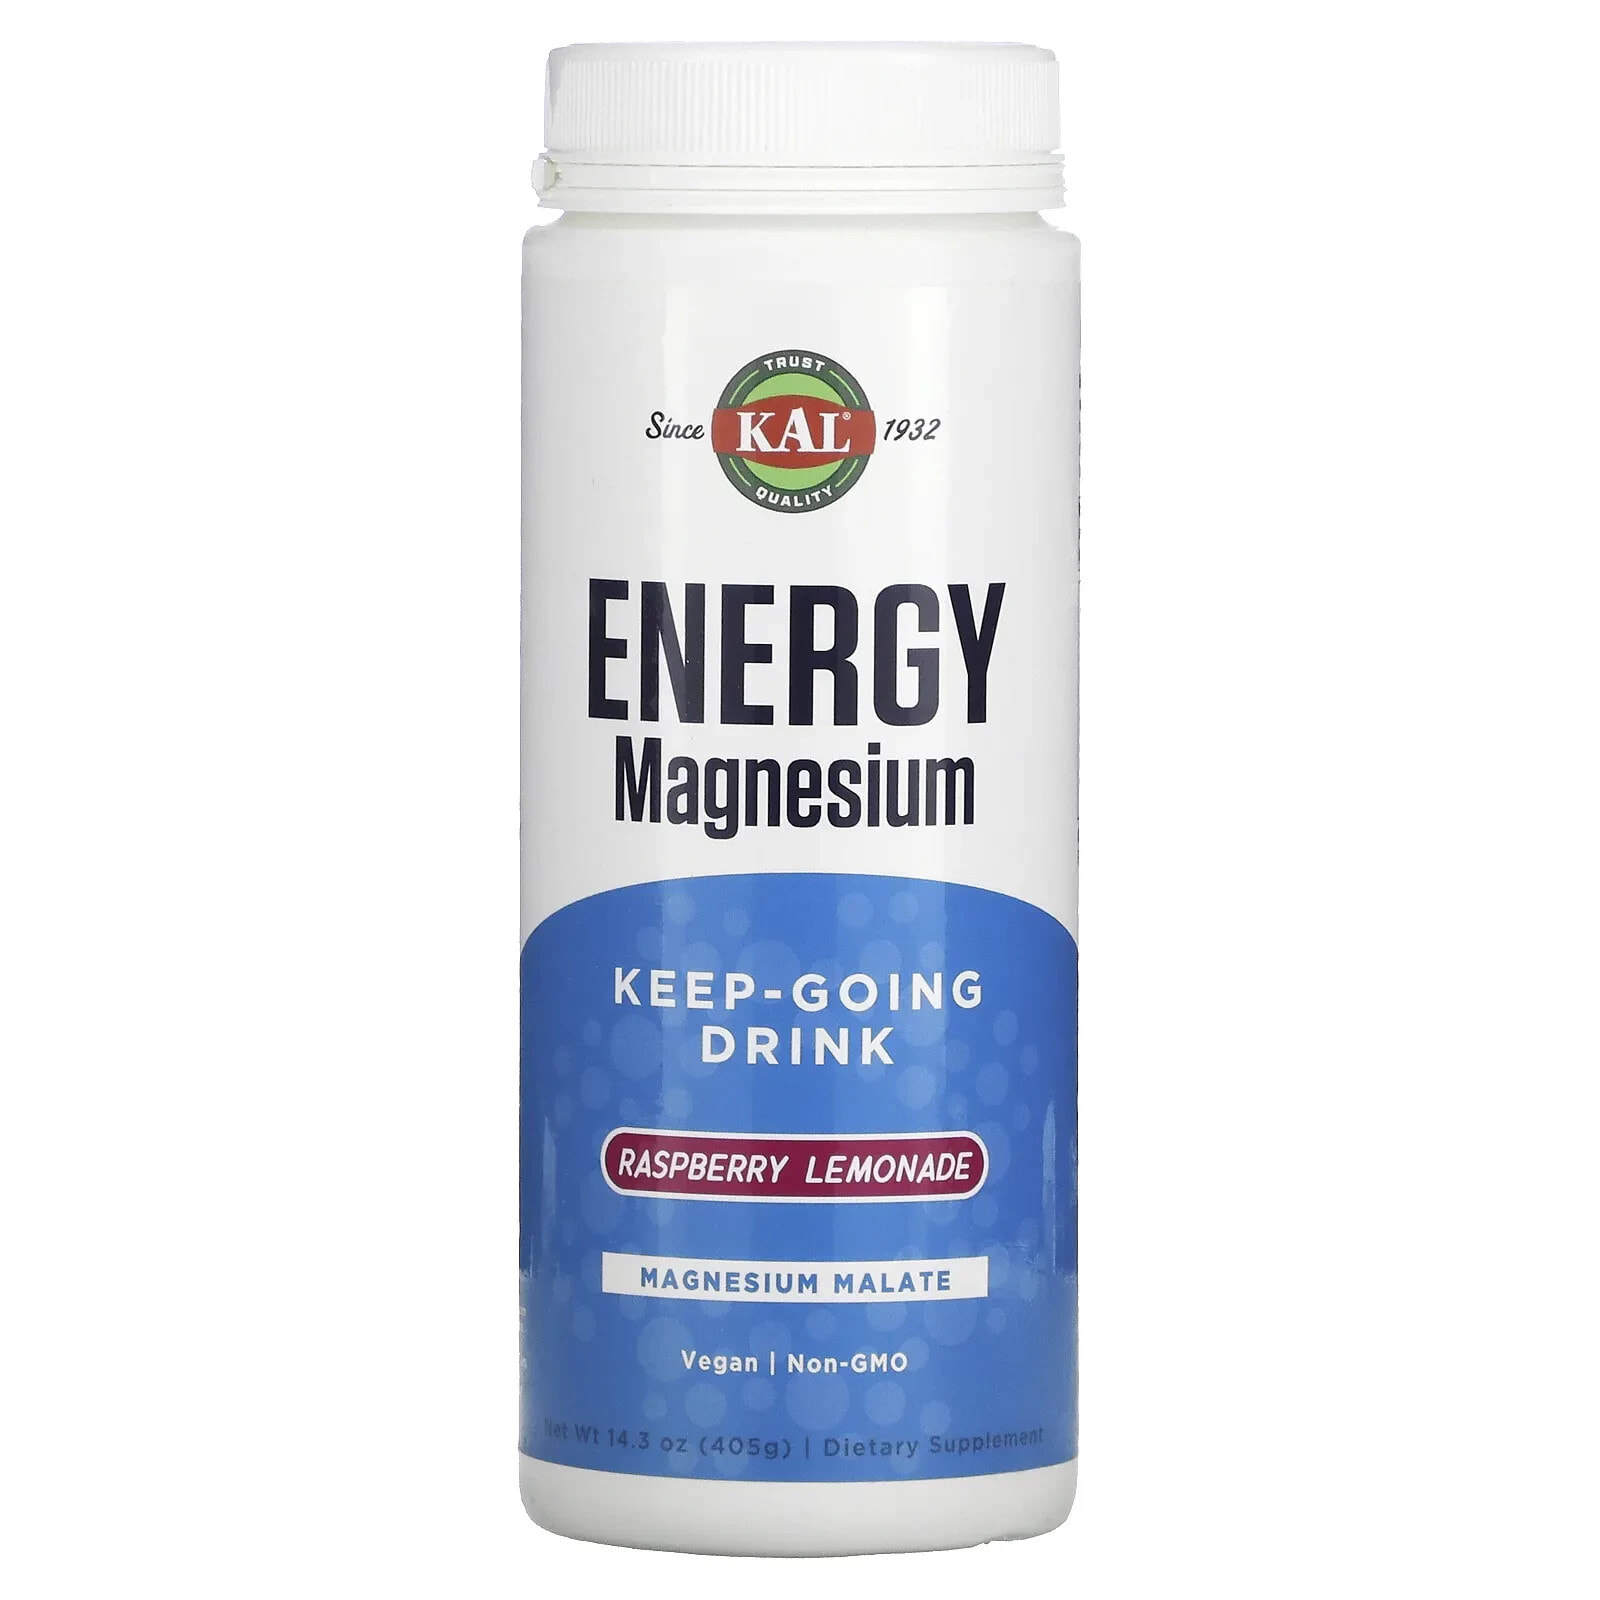 КАЛ, Energy Magnesium, Keep-Going Drink, Raspberry Lemonade, 14.3 oz (405 g)